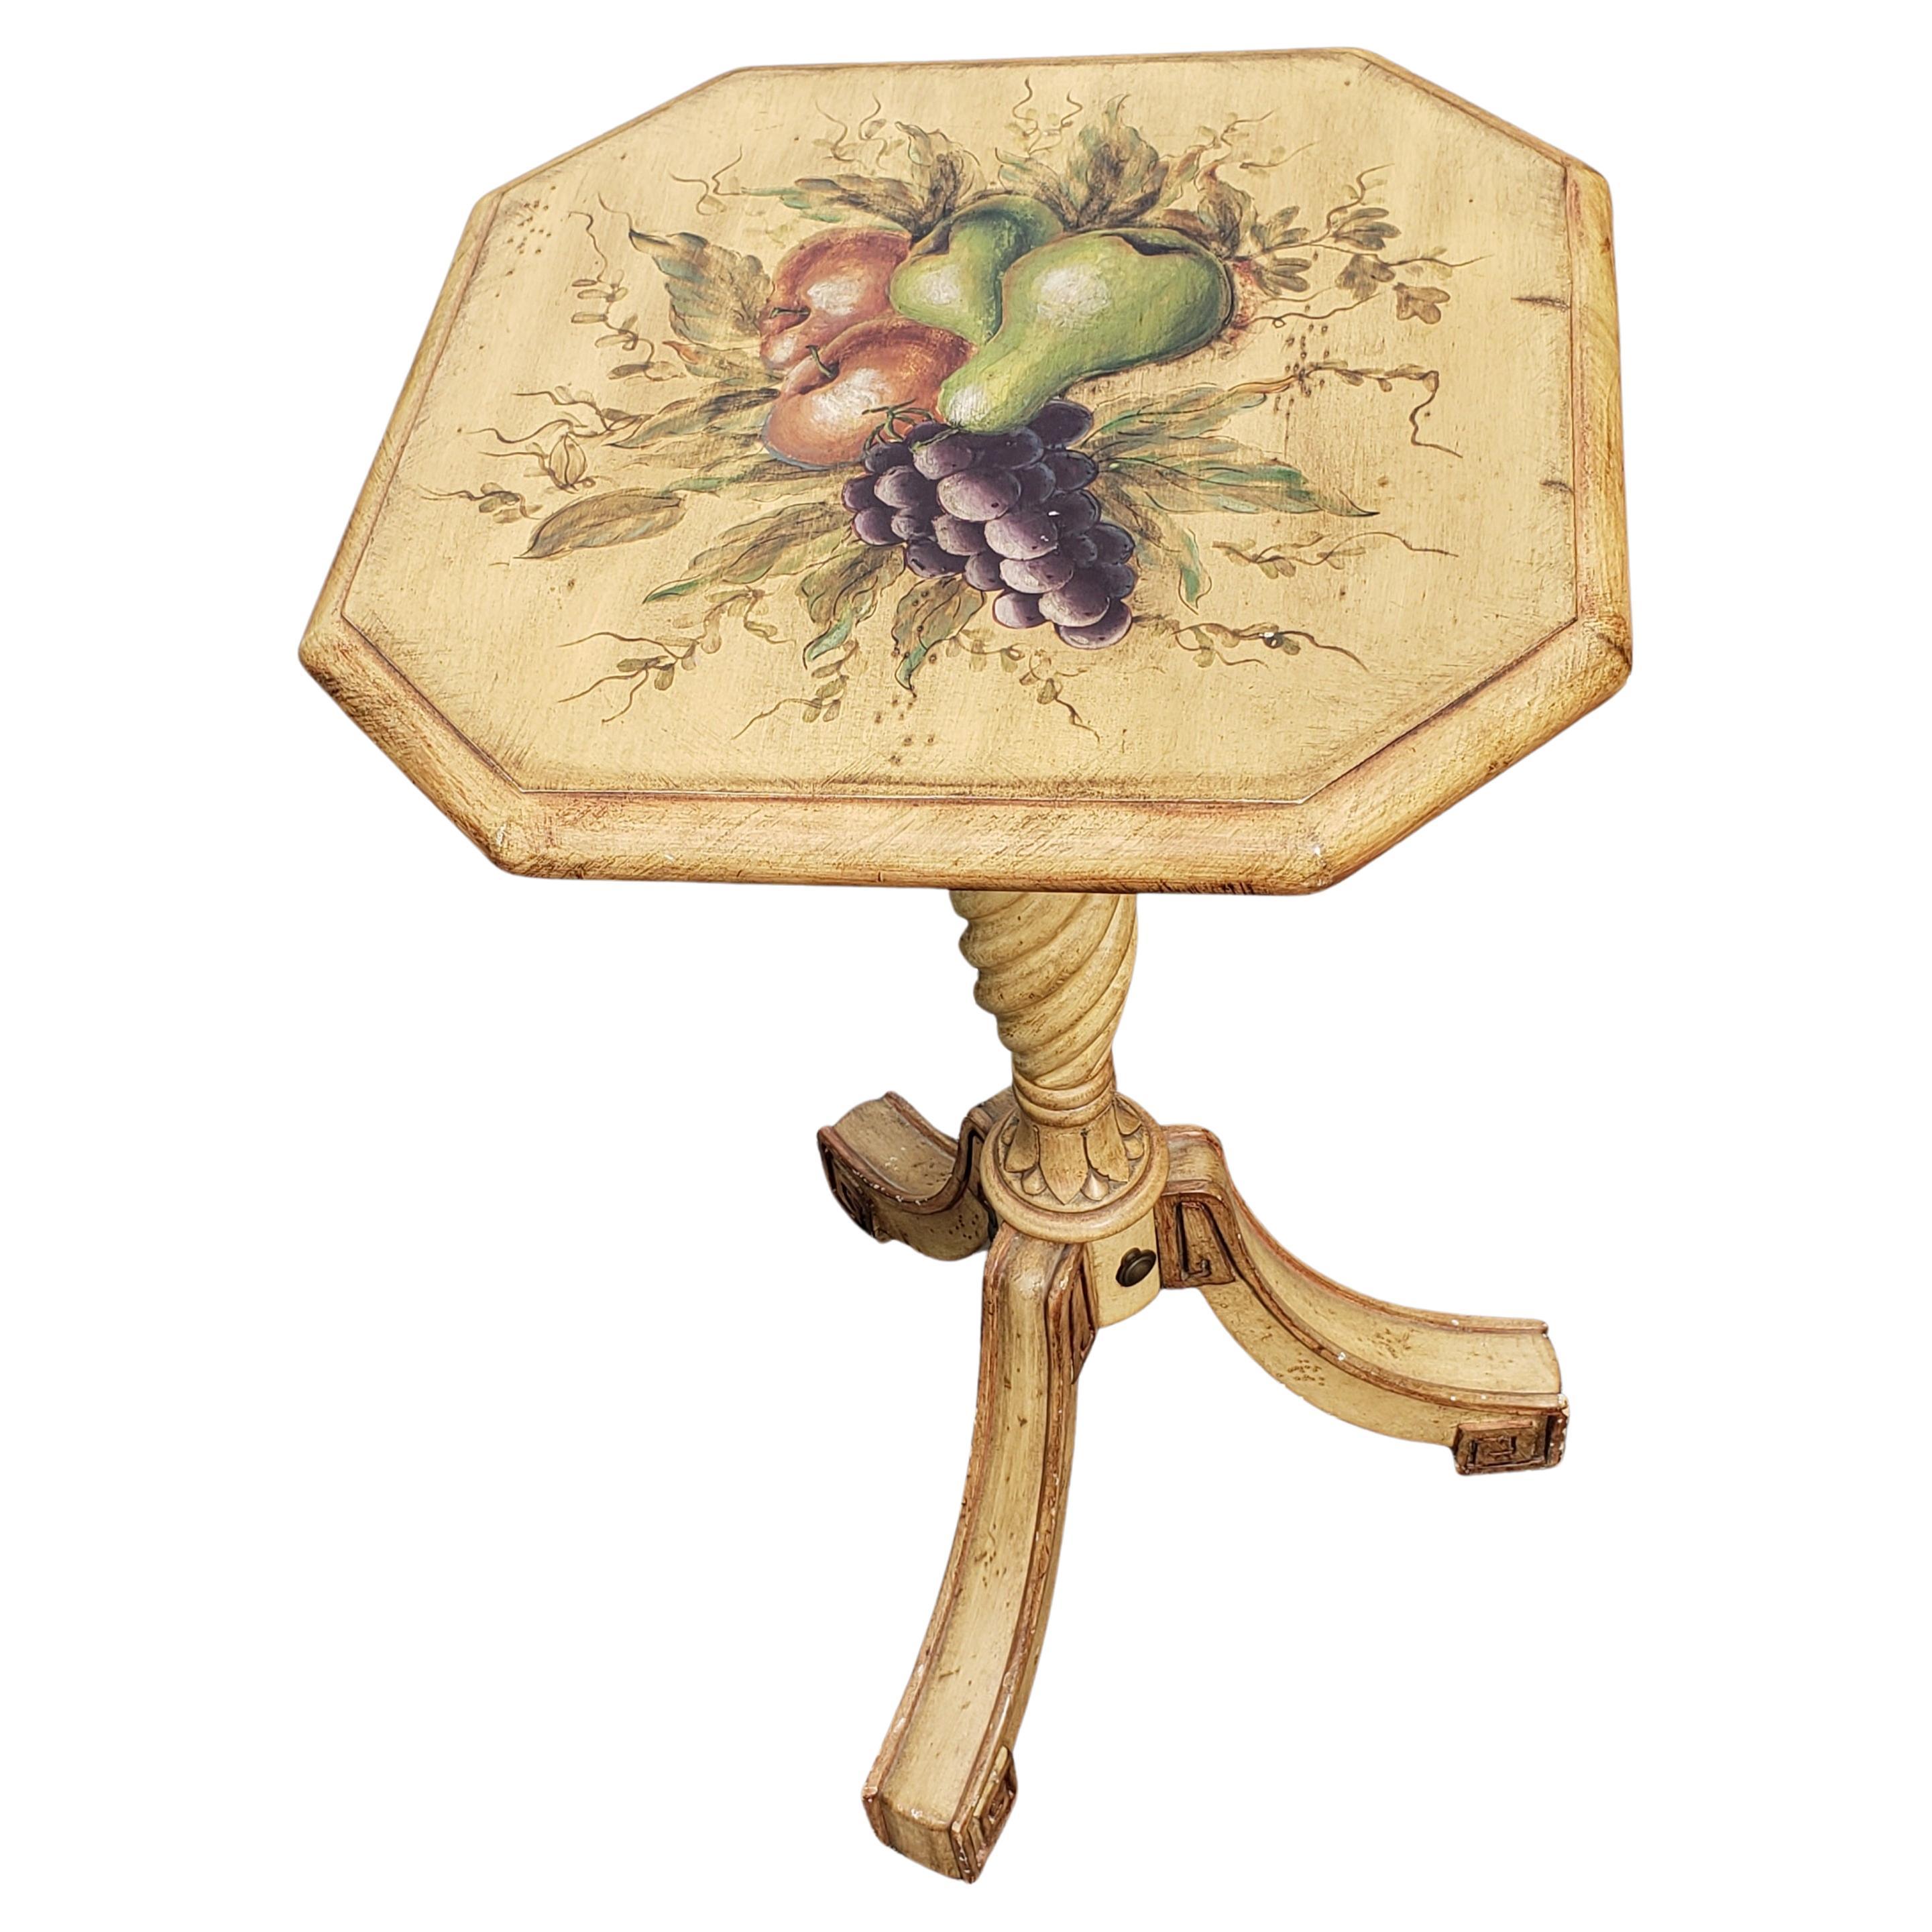 Ein modern dekorierter, bemalter Dreibein-Sockel mit kippbarer Tischplatte, bemalt in antikem Weiß/cremefarbenem Hintergrund mit Obstmalerei auf der Platte.

Maße: 15,25